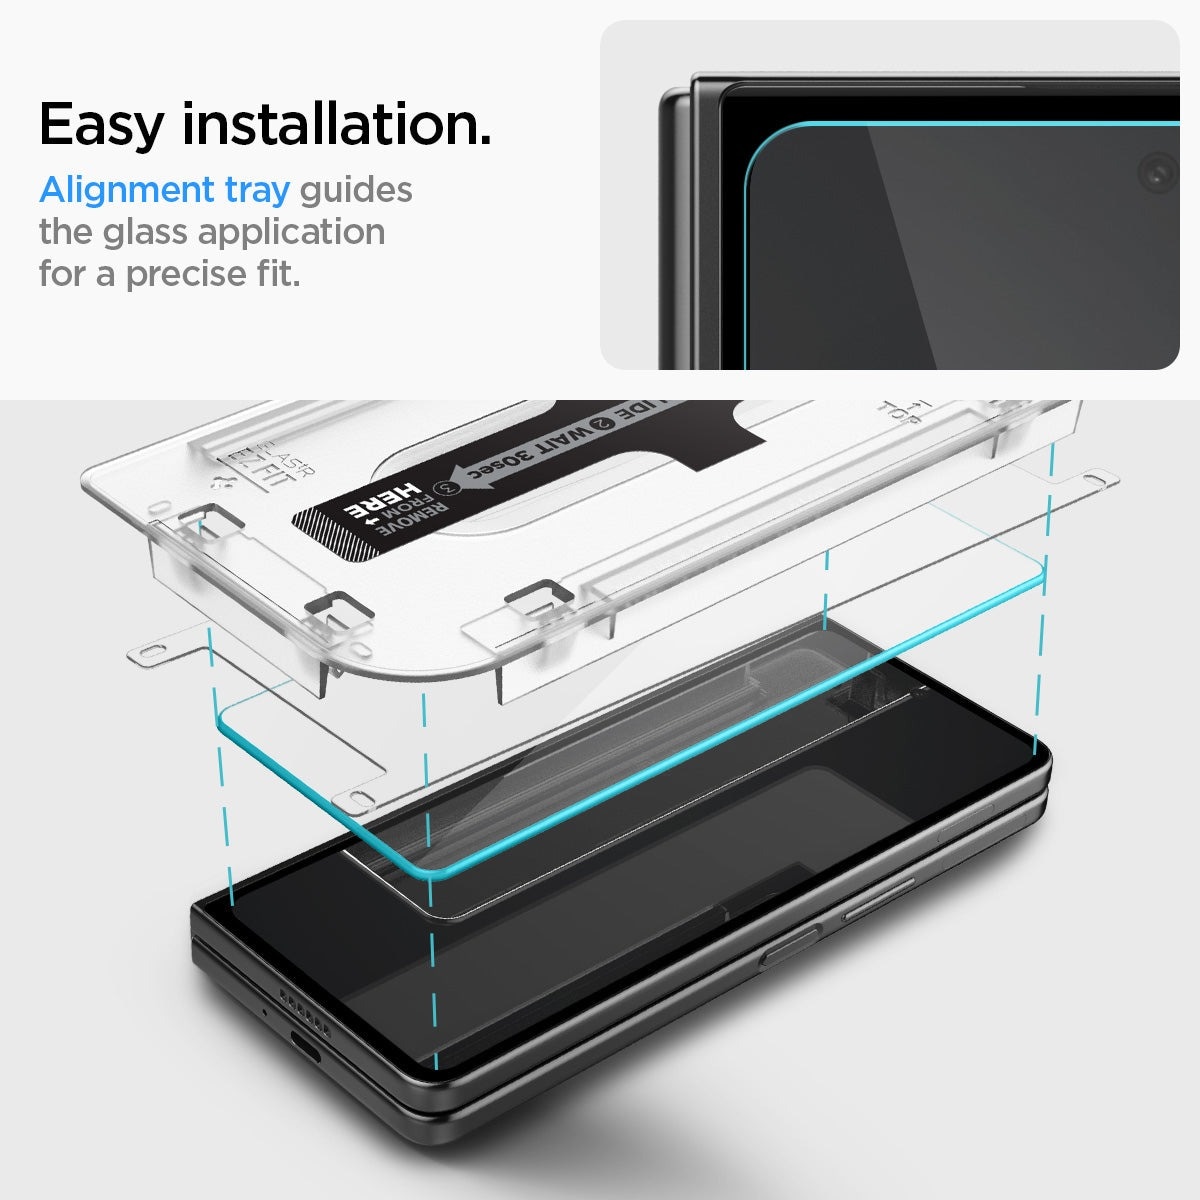 Cover Screen Protector GLAS.tR EZ Fit (2 piezas) Galaxy Z Fold 5